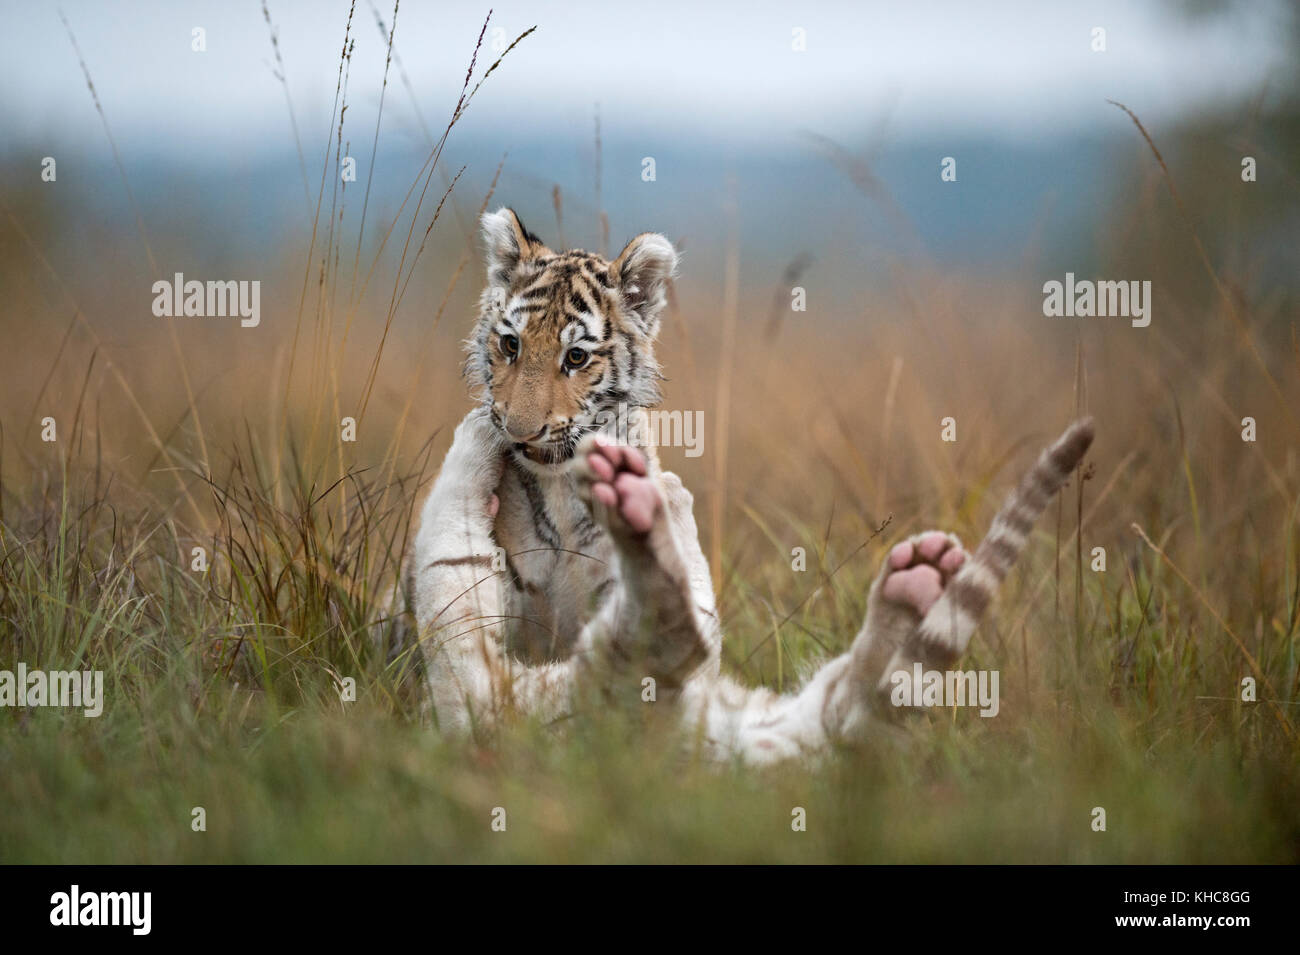 Tigri del Bengala reale ( Panthera tigris ), cuccioli giovani, fratelli, giocare, wrestling, romping in erba alta, ambiente naturale tipico, gattino divertente. Foto Stock